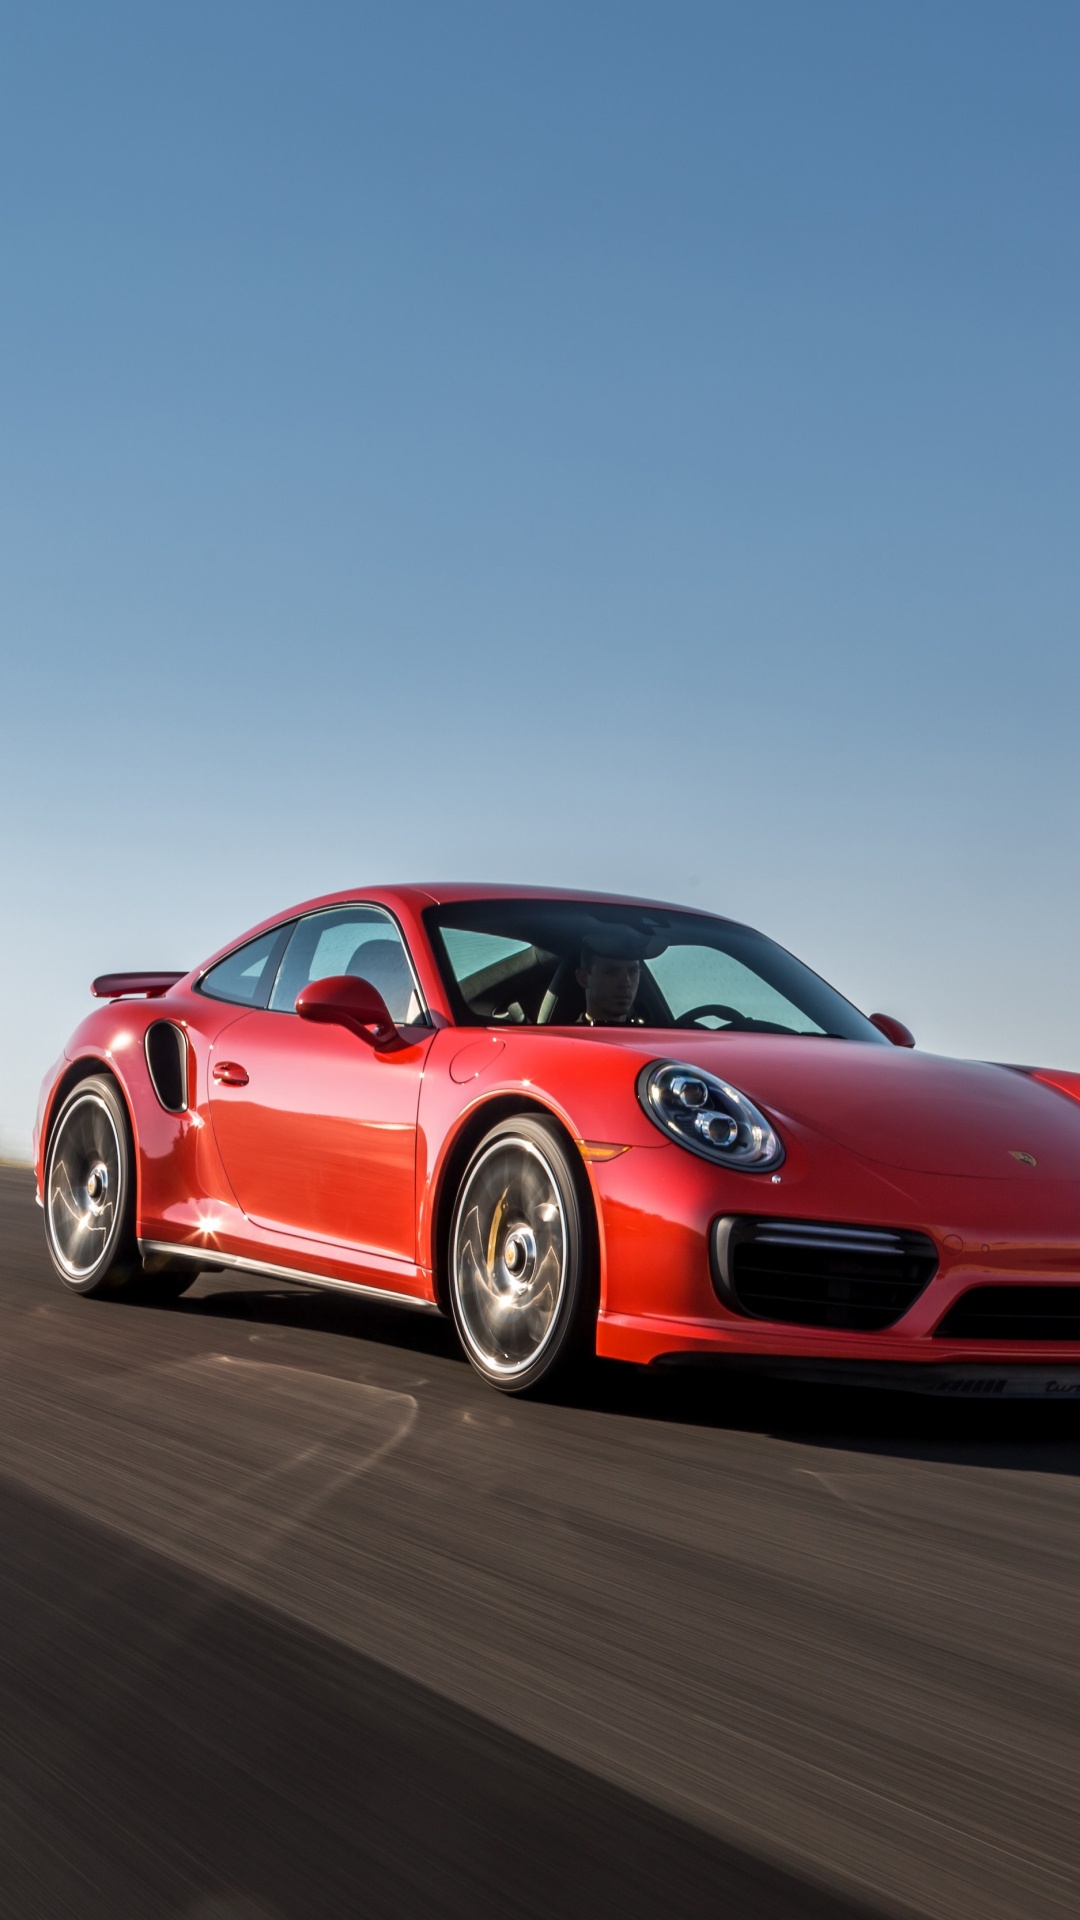 Porsche 911 Rojo en la Carretera Durante el Día. Wallpaper in 1080x1920 Resolution